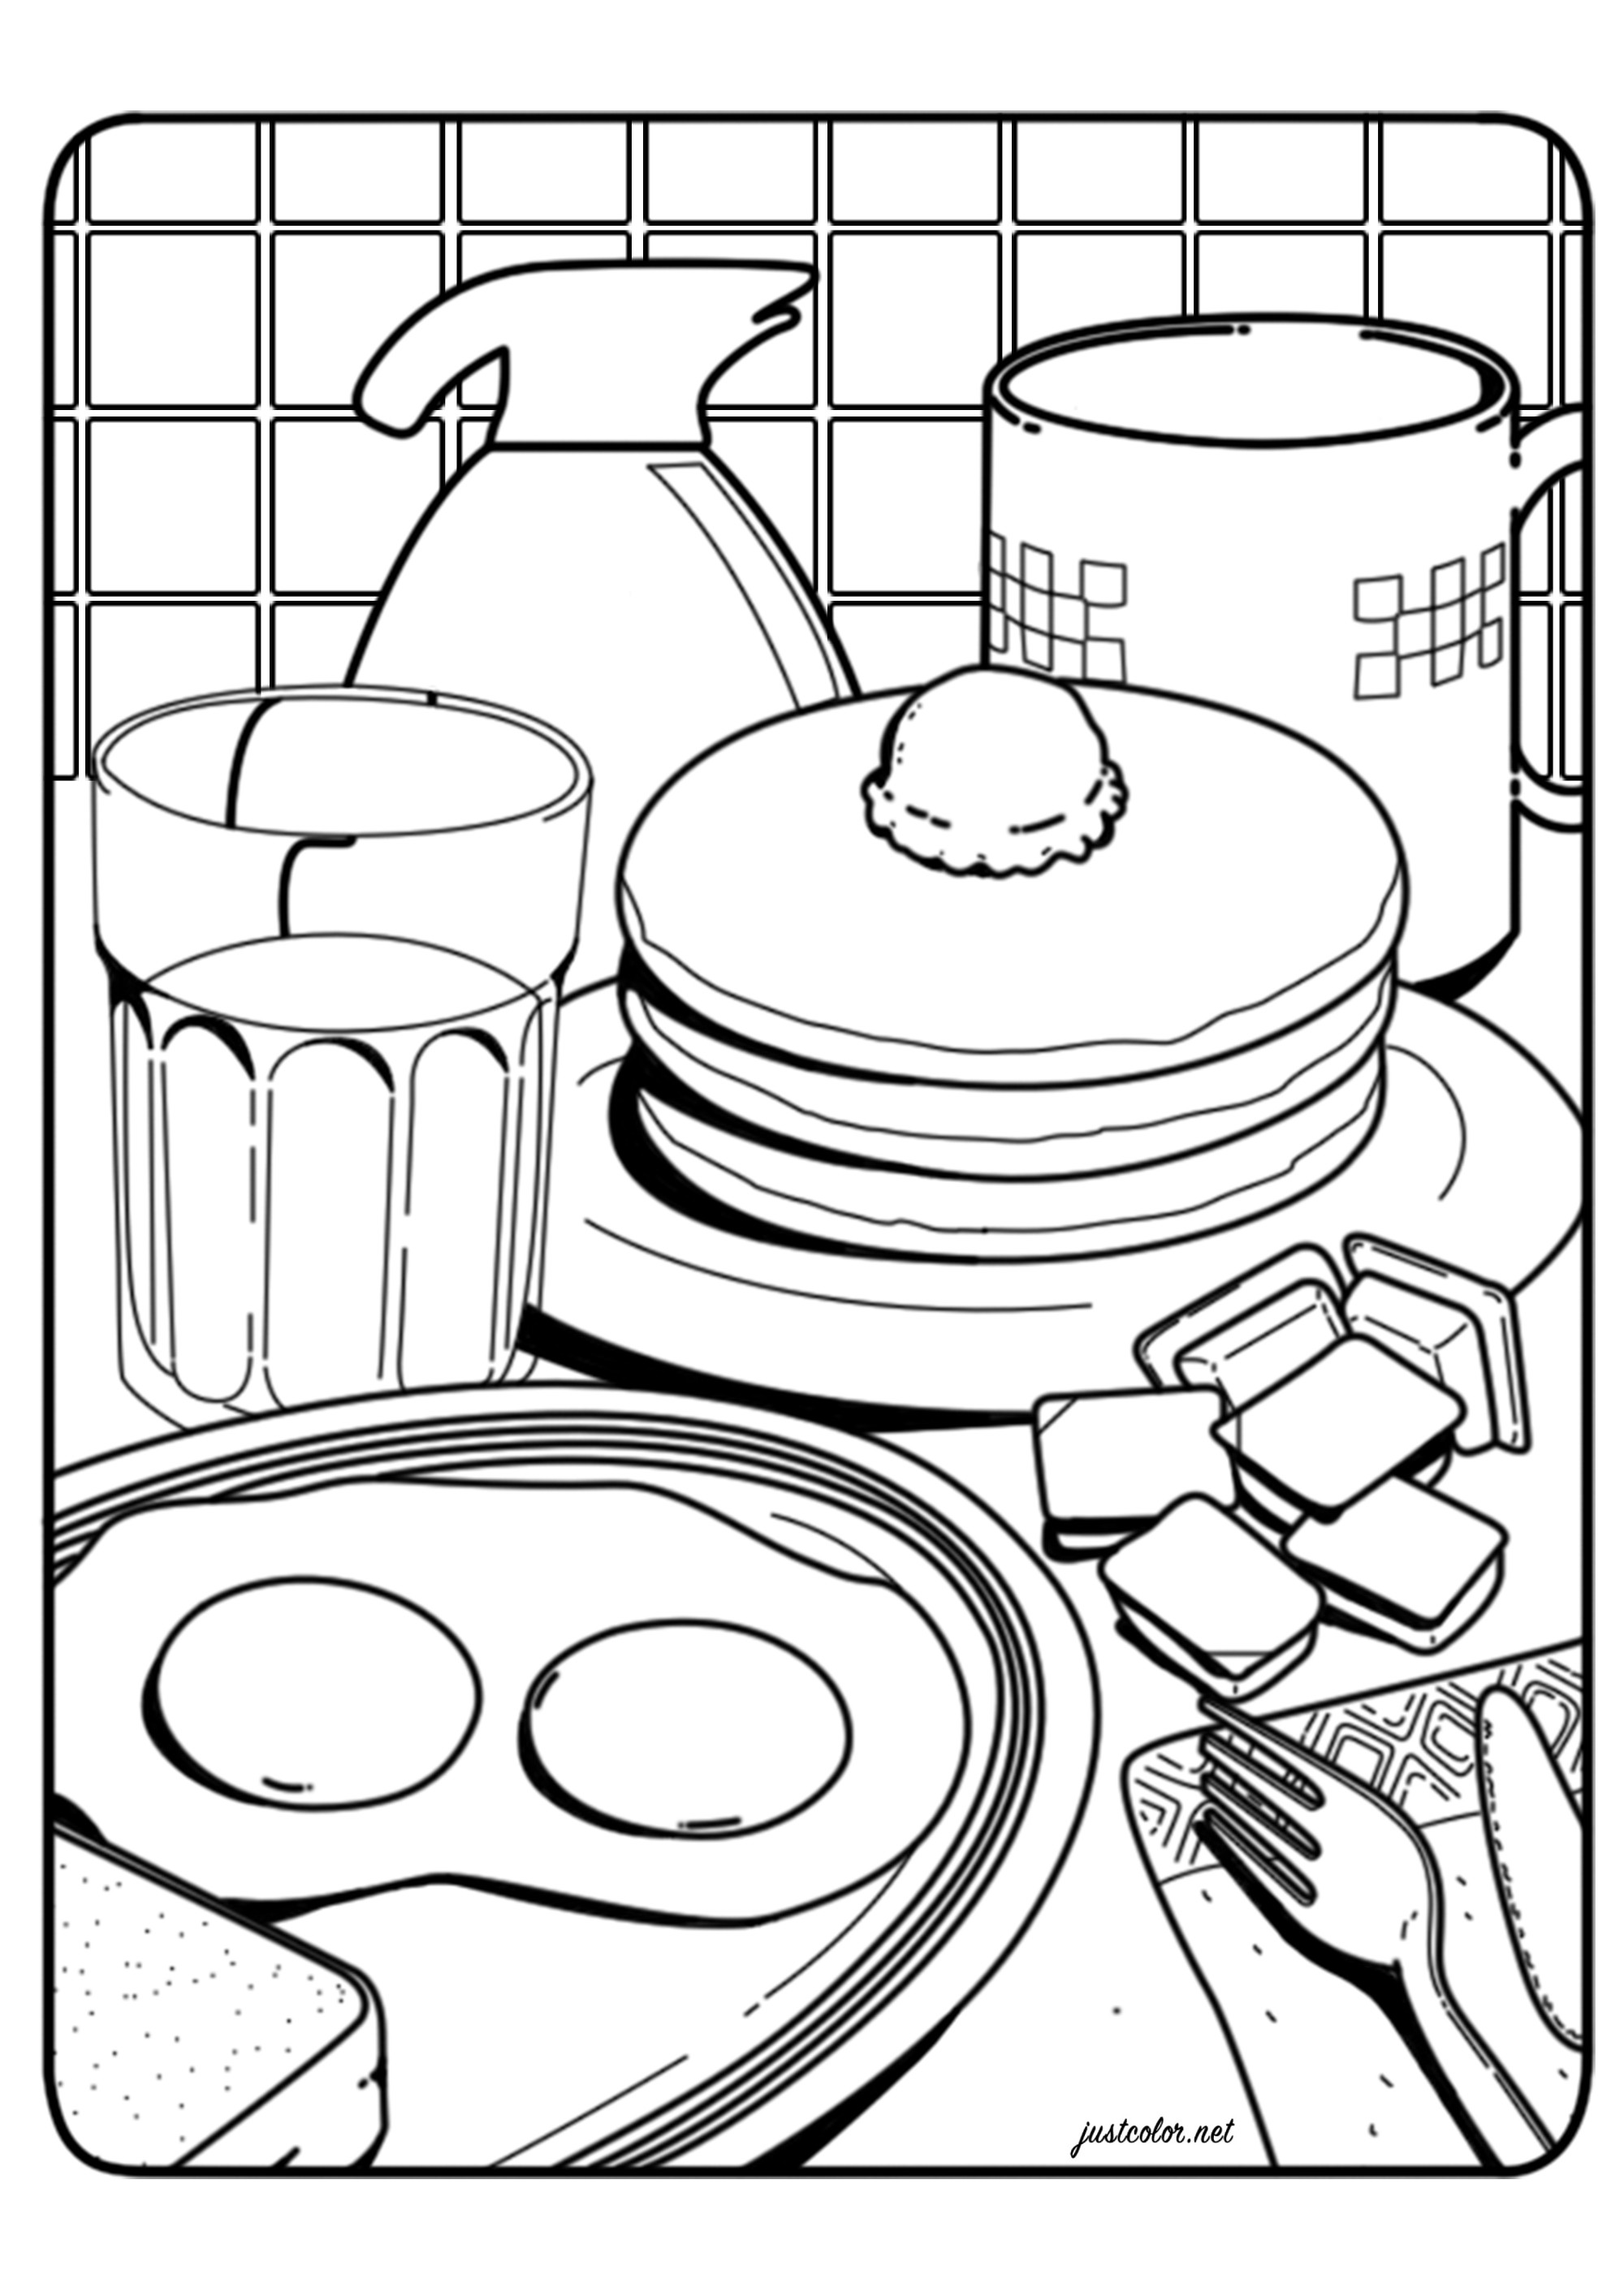 Un bon petit déjeuner avec oeufs sur le plat, pancakes, café ...  un coloriage inspiré par l'illustration 'Le Petit déjeuner' de Lauren Martin